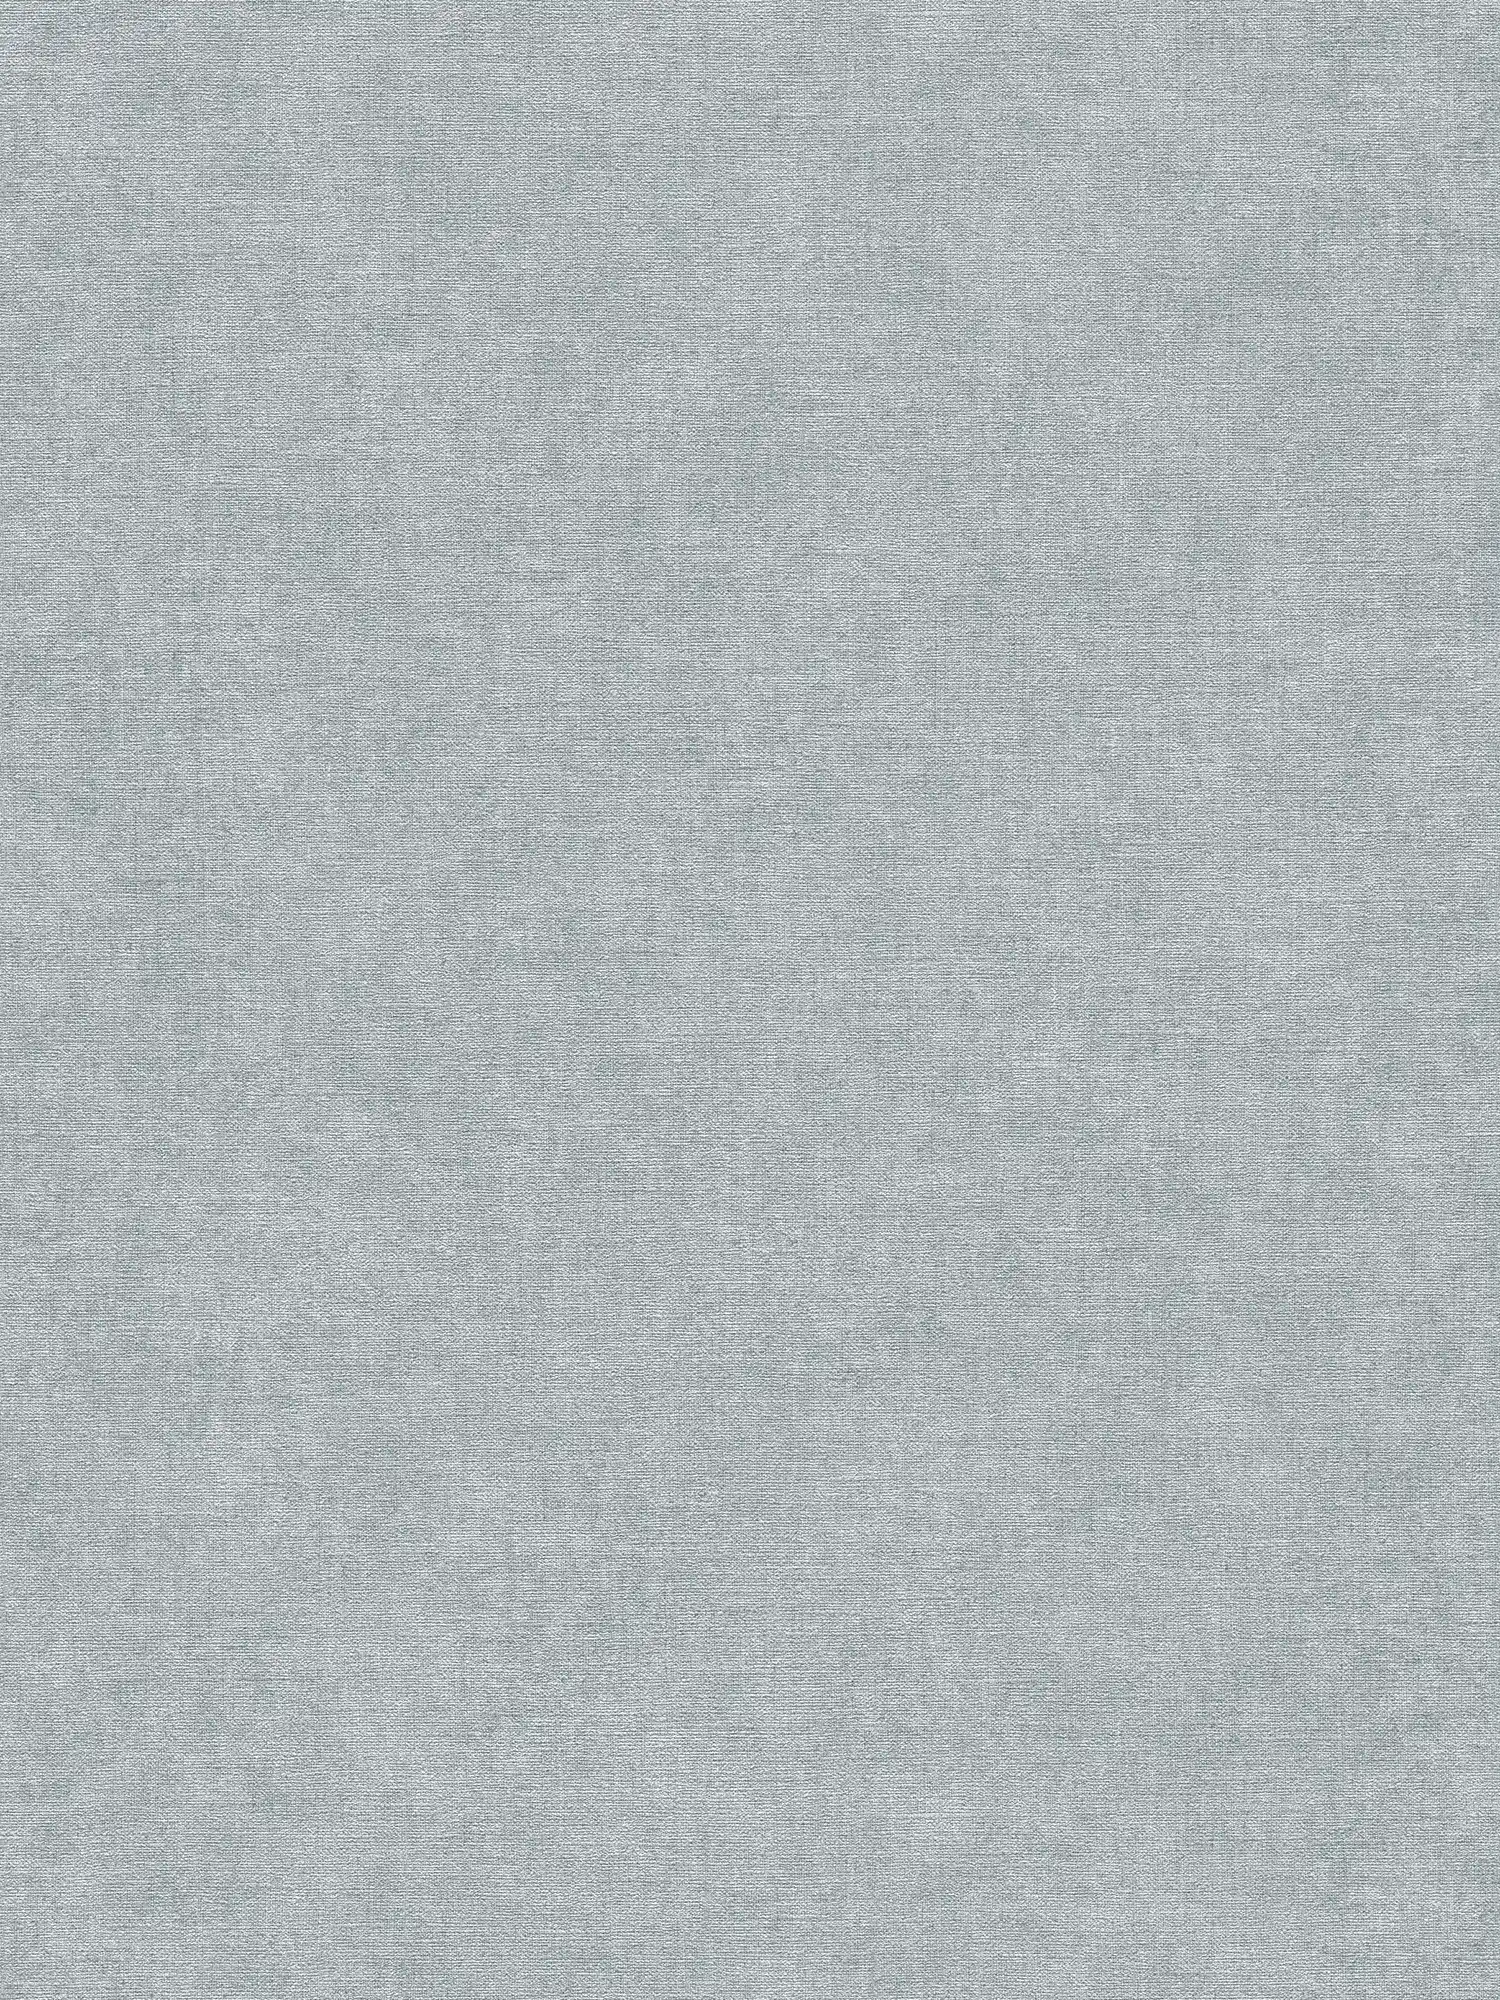 Carta da parati non tessuta con texture leggera in look gesso - grigio, blu
